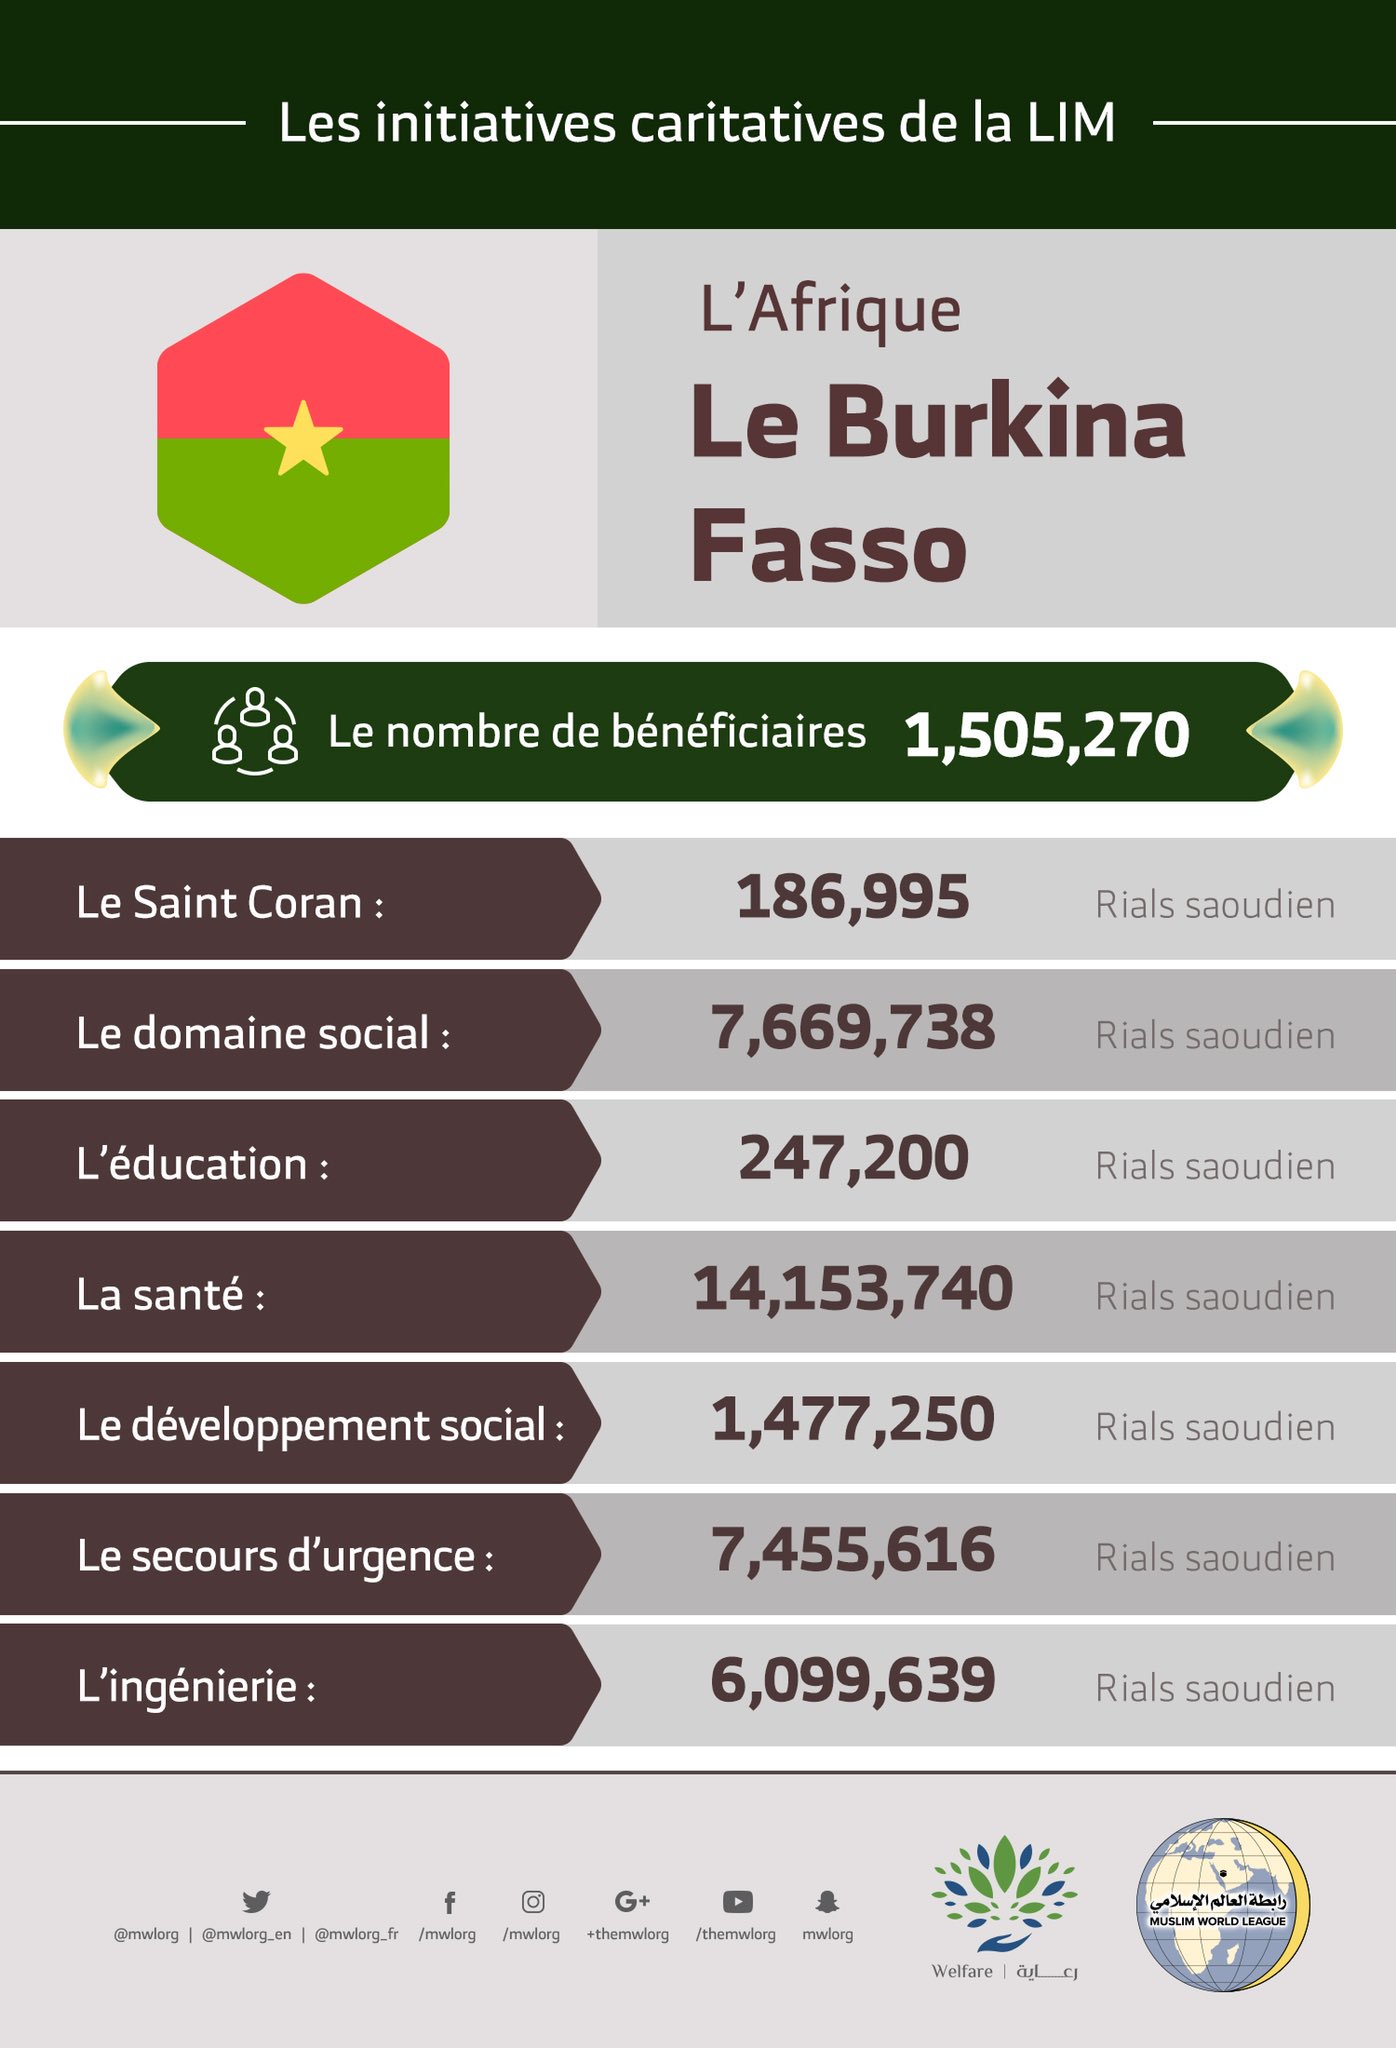 Le nombre total de bénéficiaires au Burkina Fasso des initiatives de la Ligue Islamique Mondiale s’élève à 1 505 270 personnes.